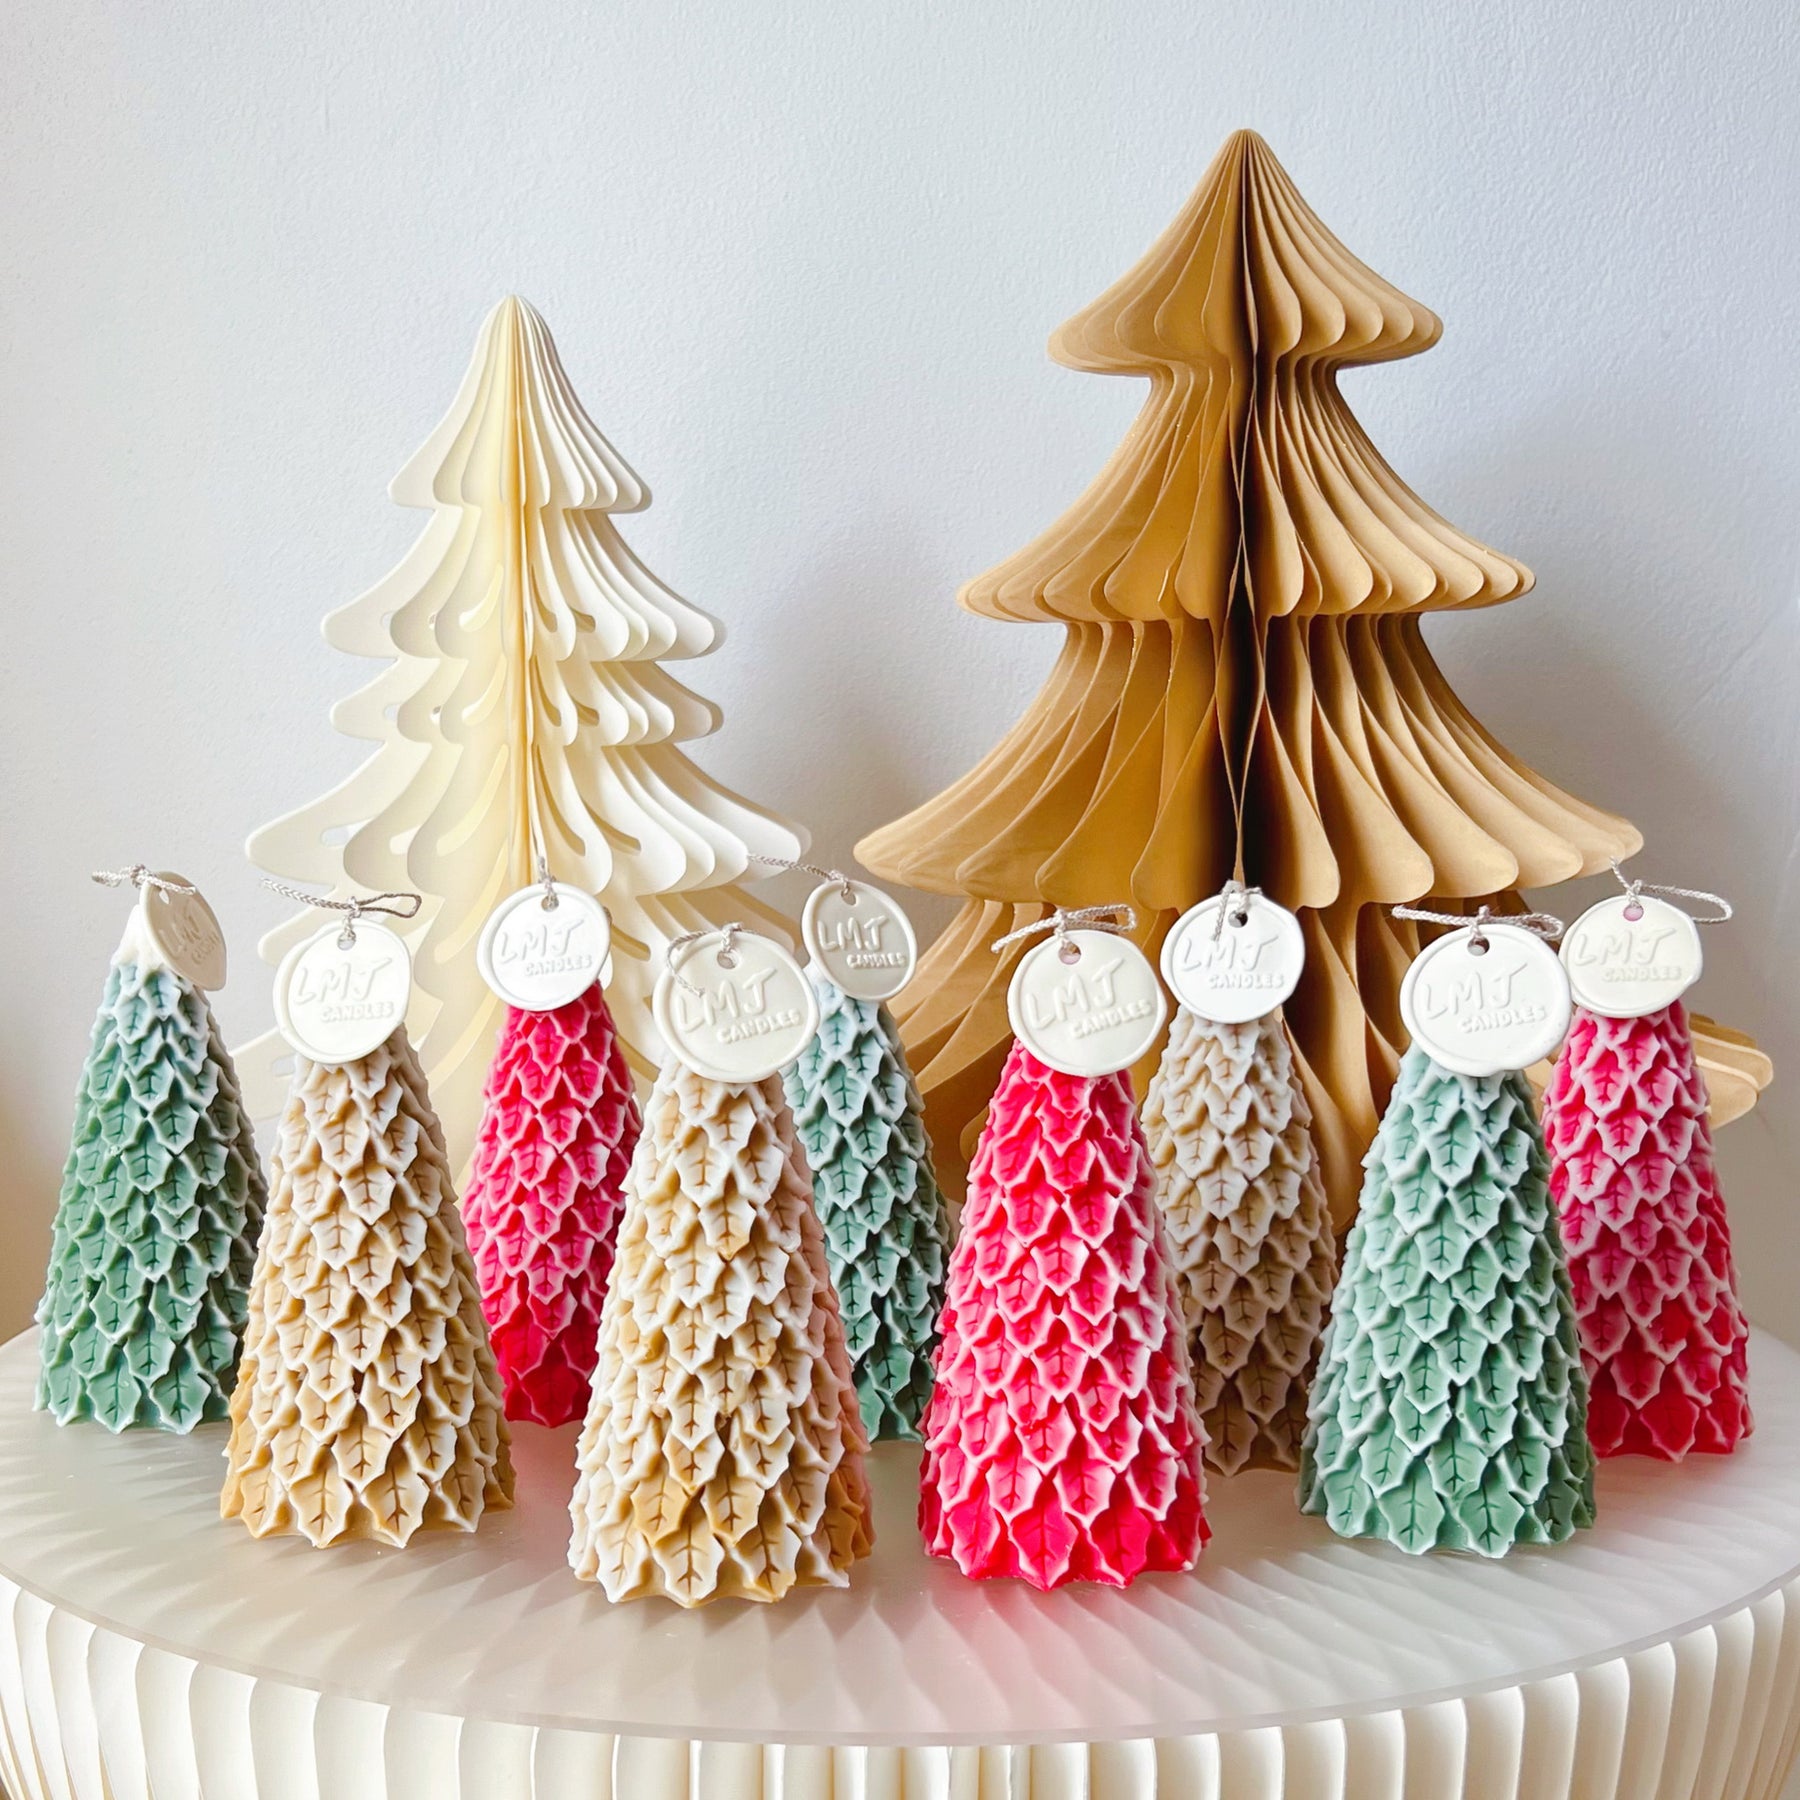 Snowy Christmas Tree Candle - Handmade Xmas Décor - LMJ Candles